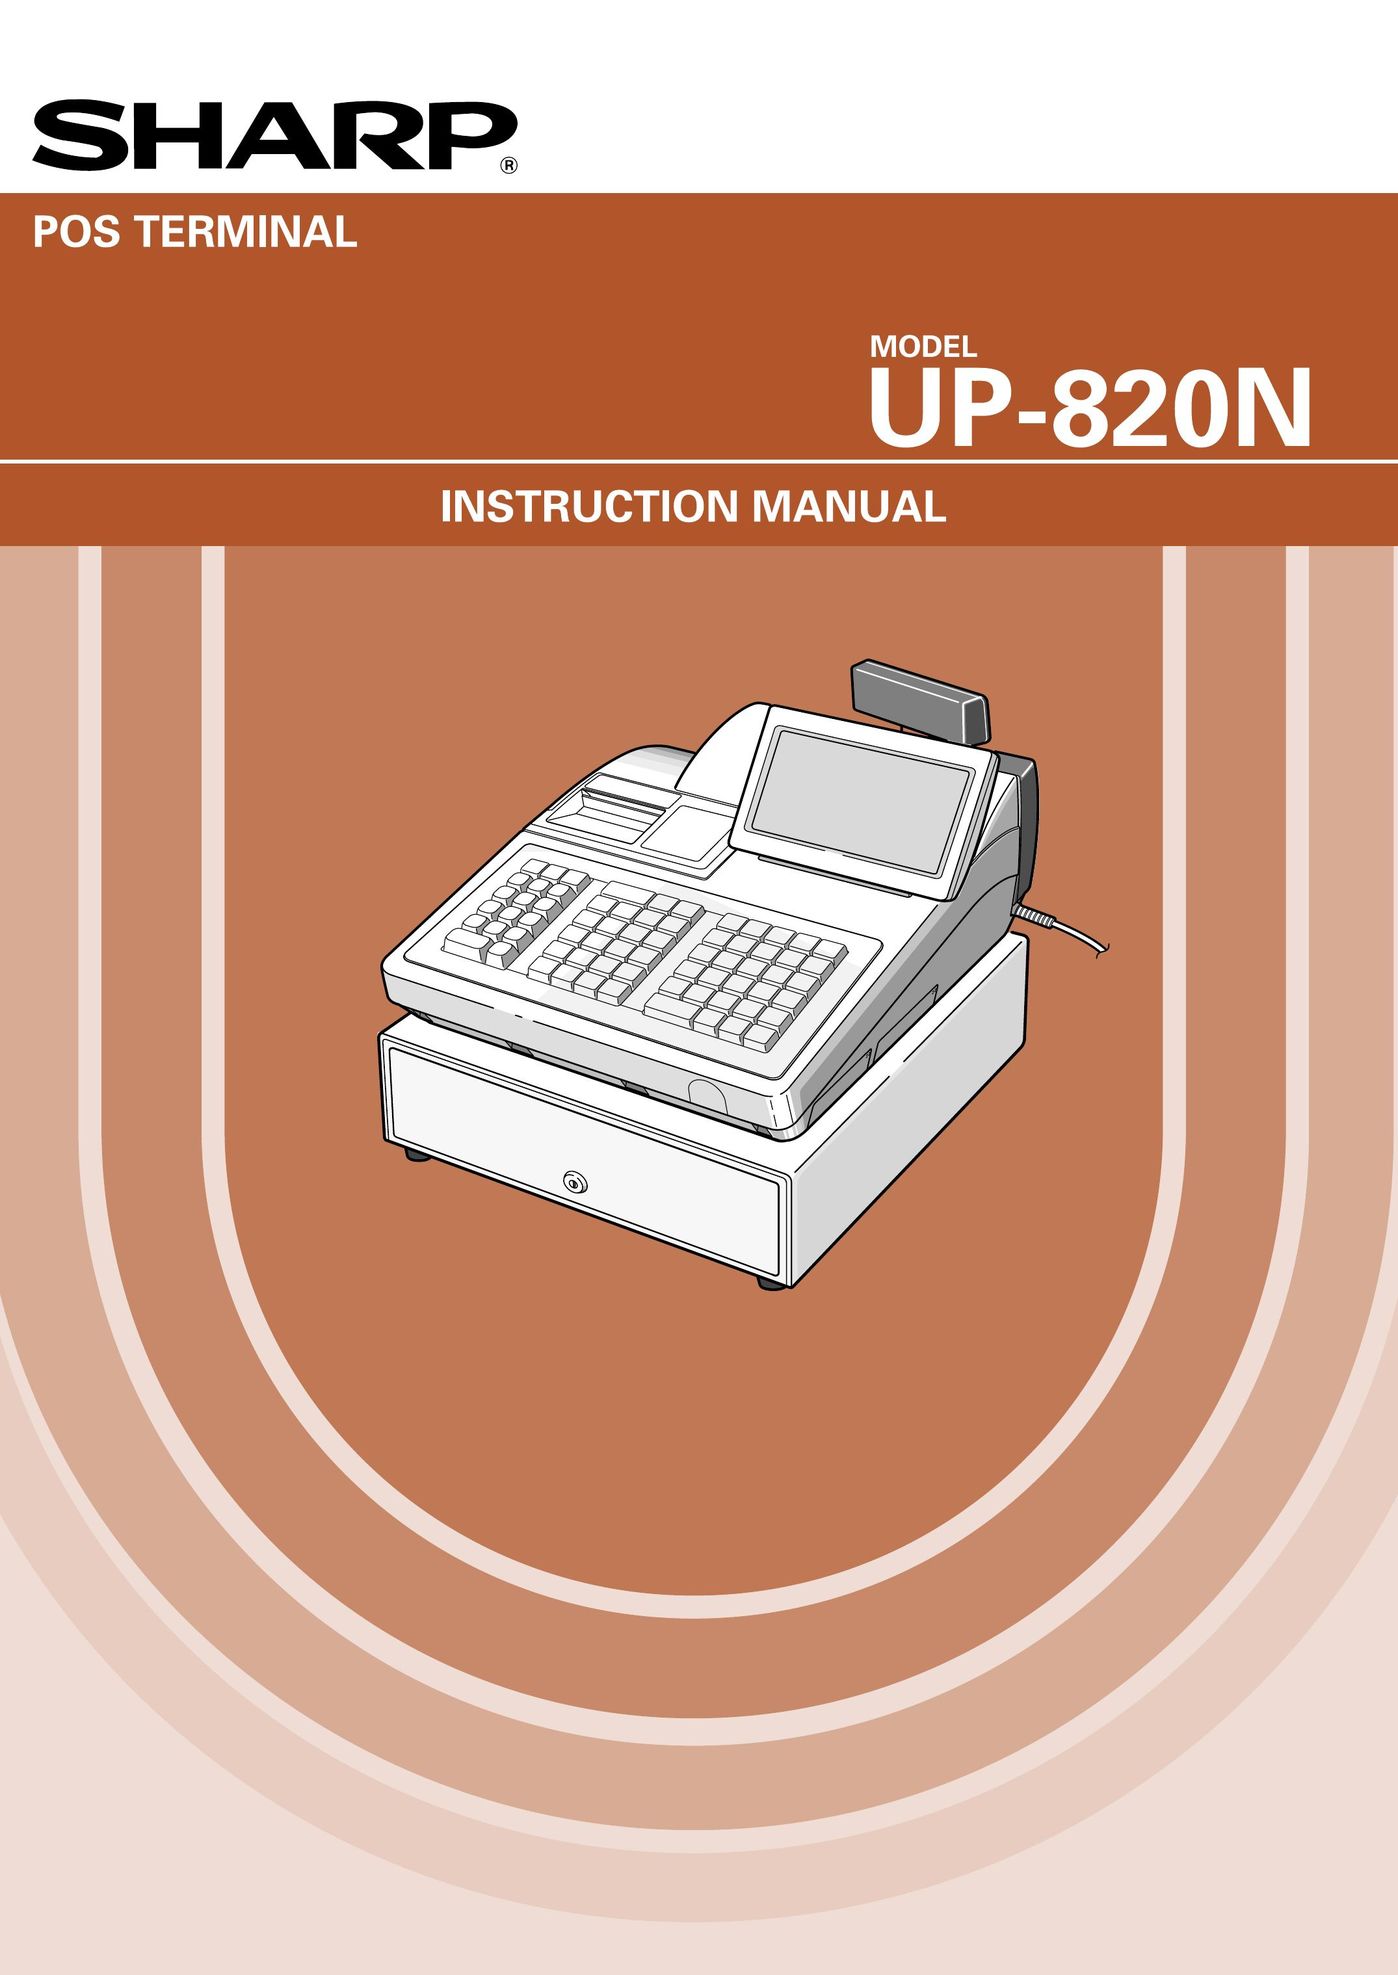 Sharp UP-820N Cash Register User Manual